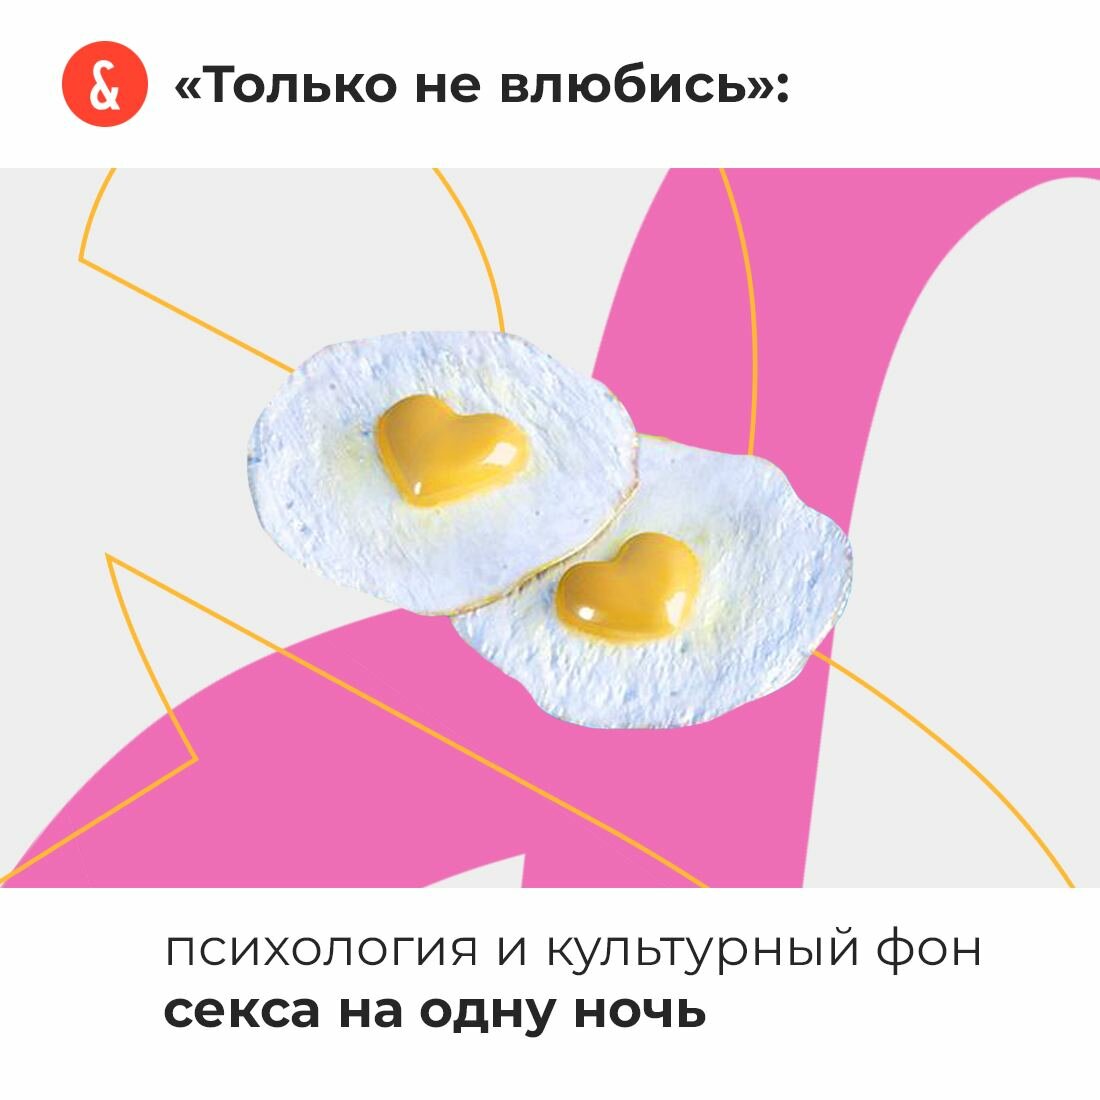 Секс на одну ночь давно перестал быть чем-то предосудительным» — Яндекс Кью